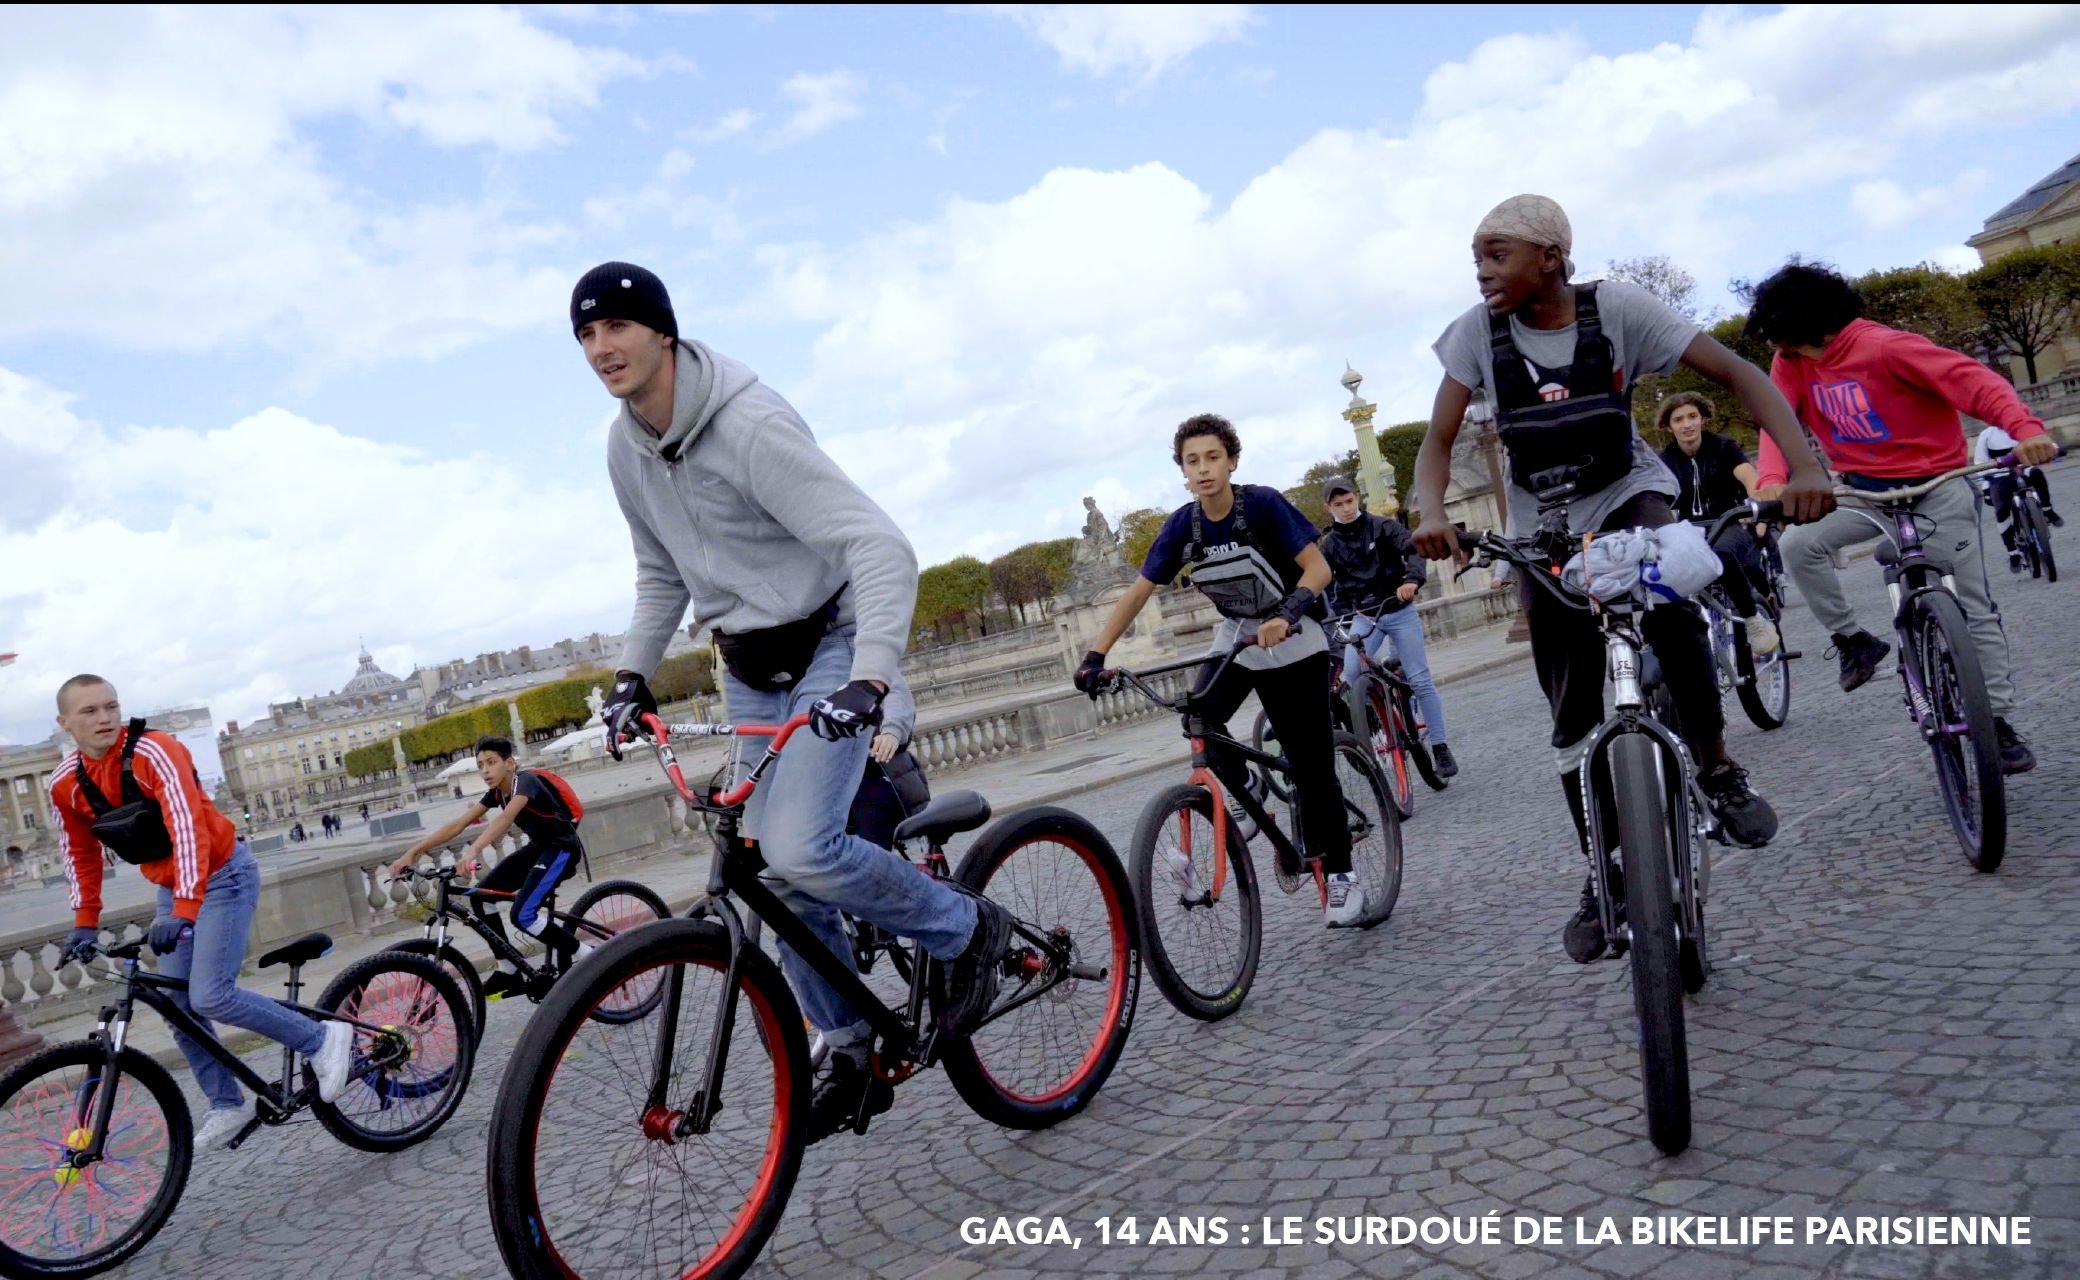 L'un des reportages documentaires de l'équipe Biclou du Parisien a été sélectionné dans le cadre du festival Tous en selle au Grand Rex.